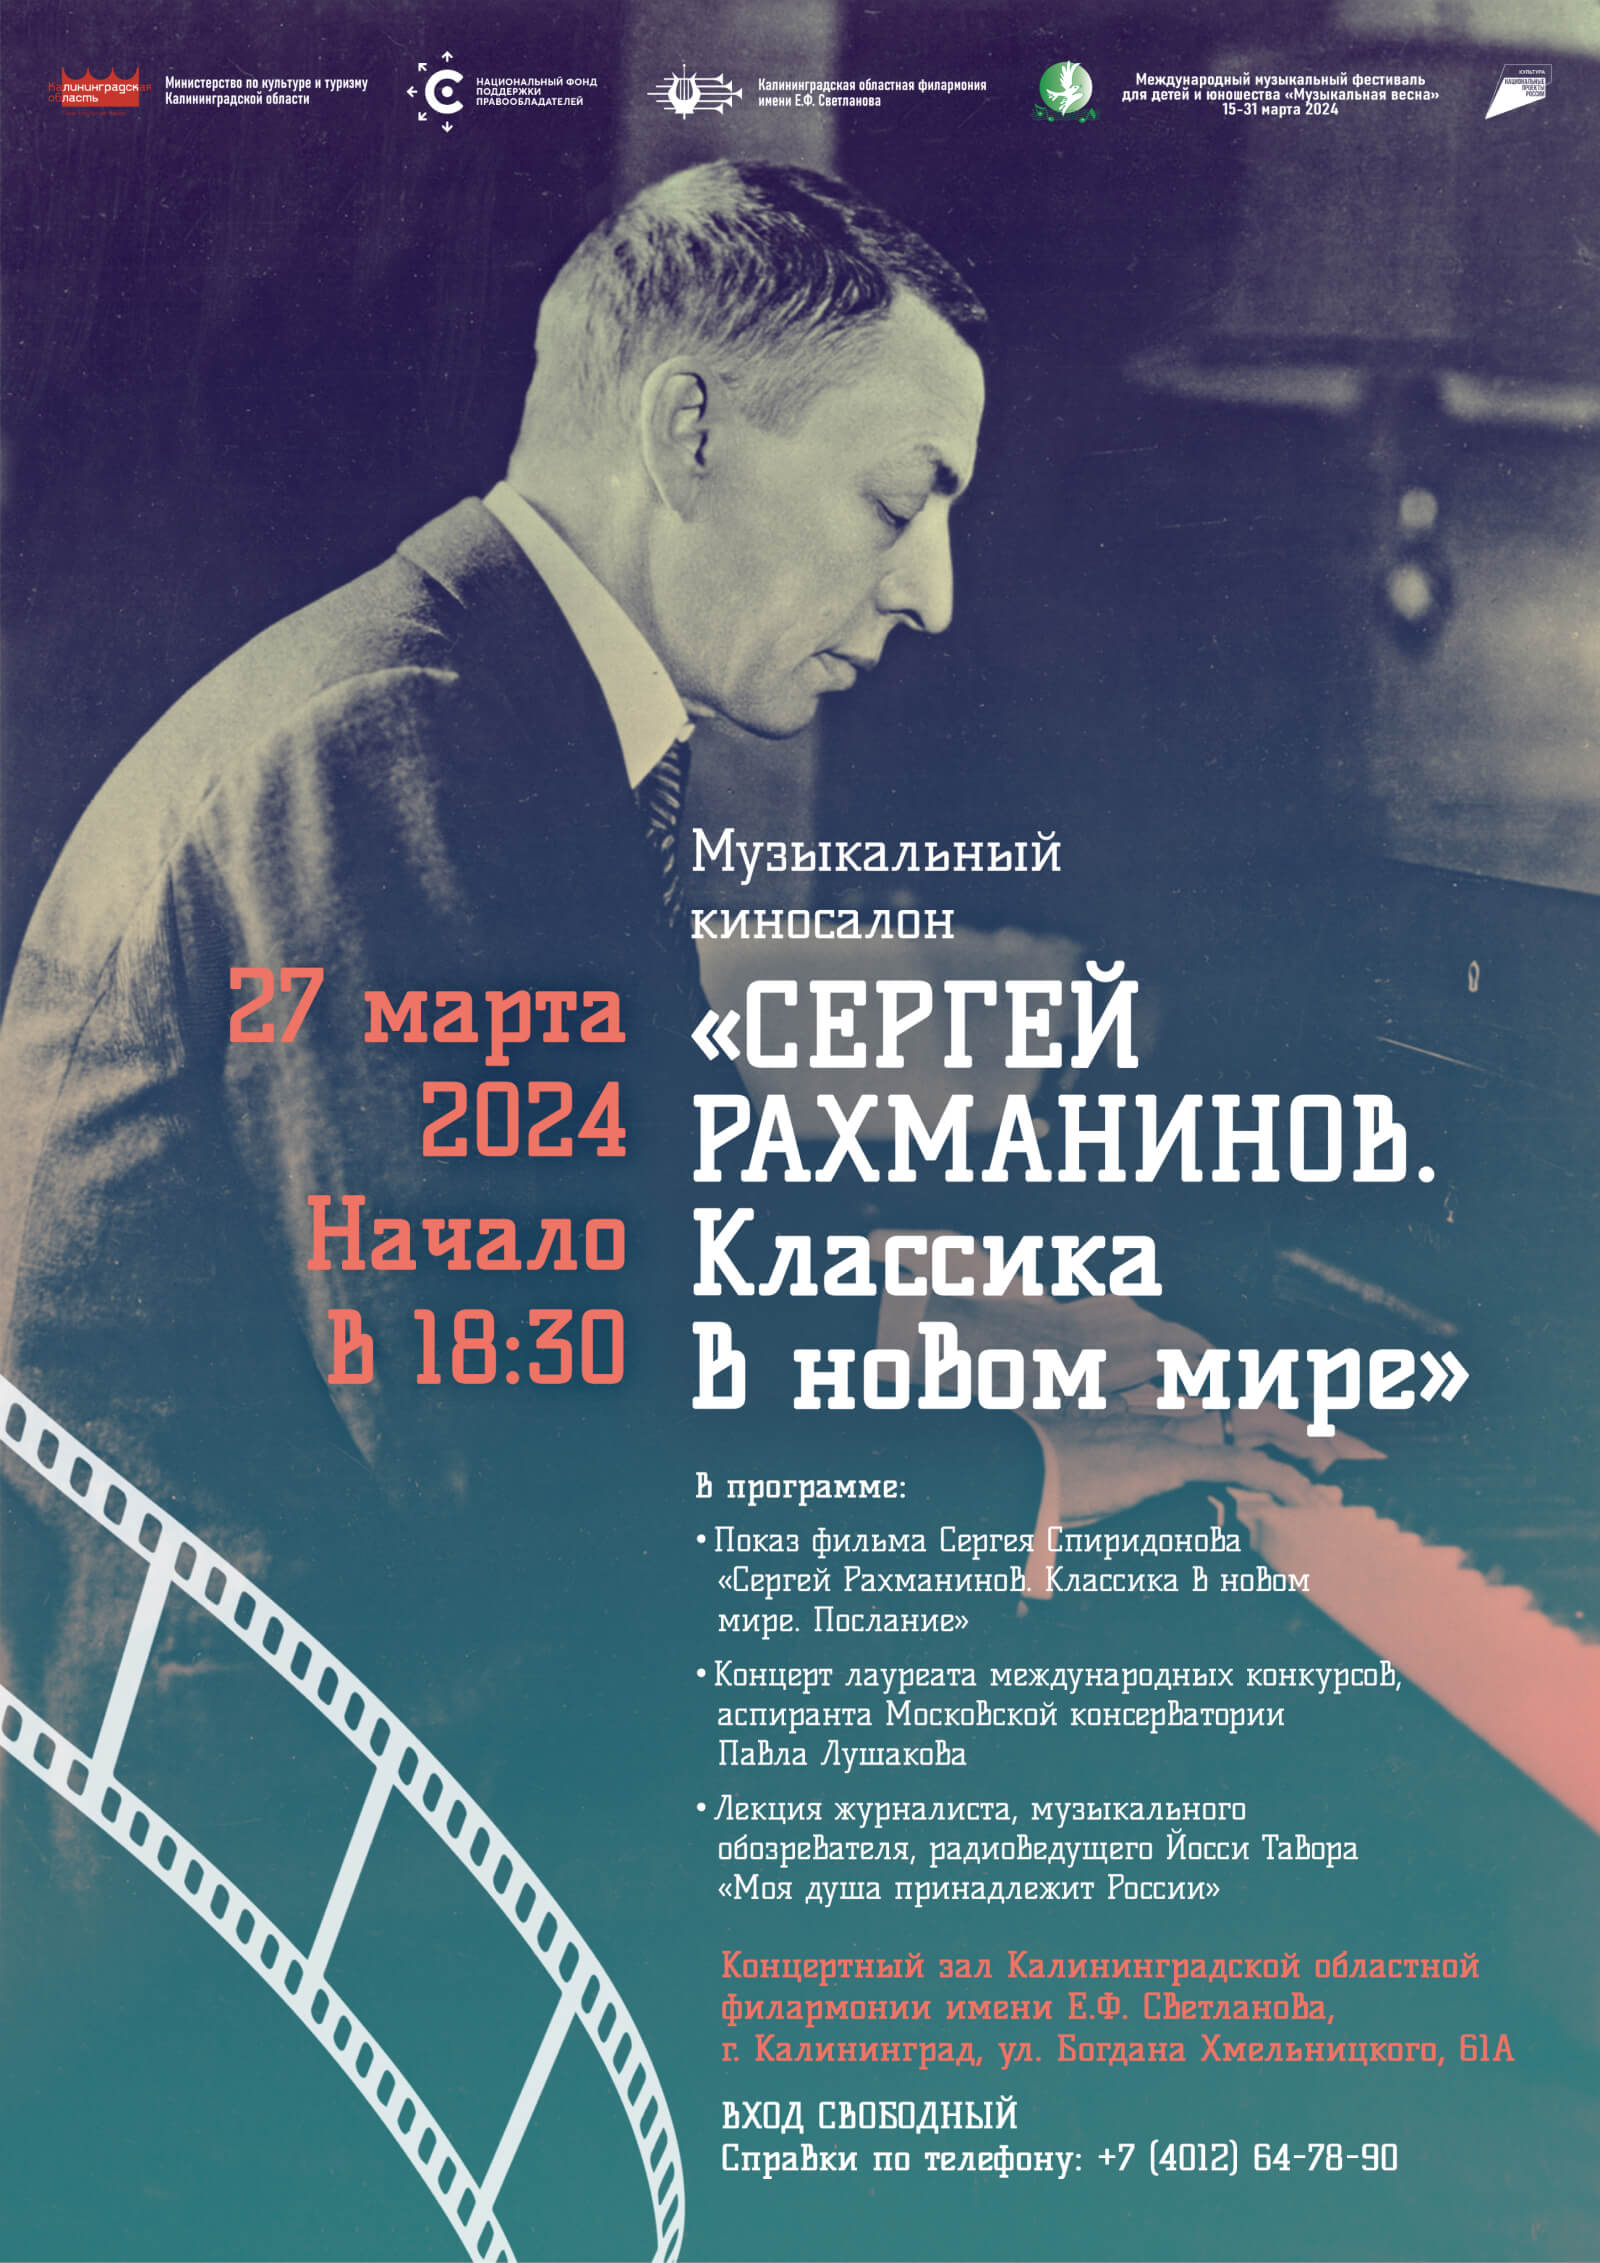 НФПП организует в Калининграде творческий вечер, посвященный Сергею Рахманинову